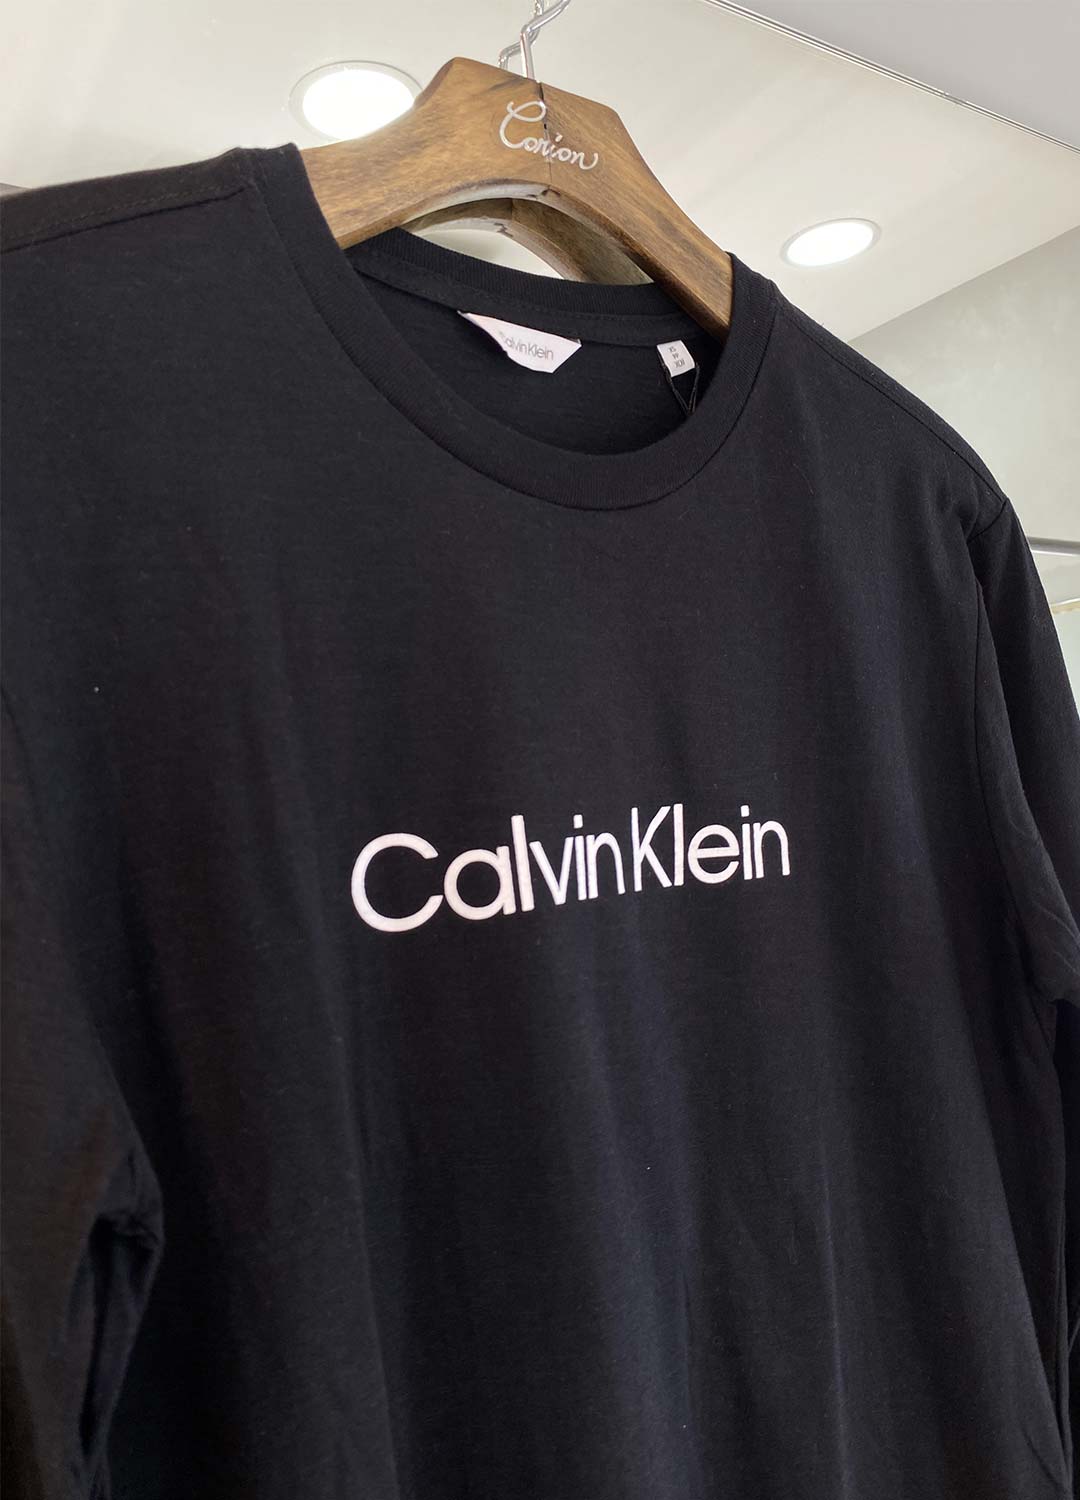 Camiseta Calvin Klein Manga Longa Logo